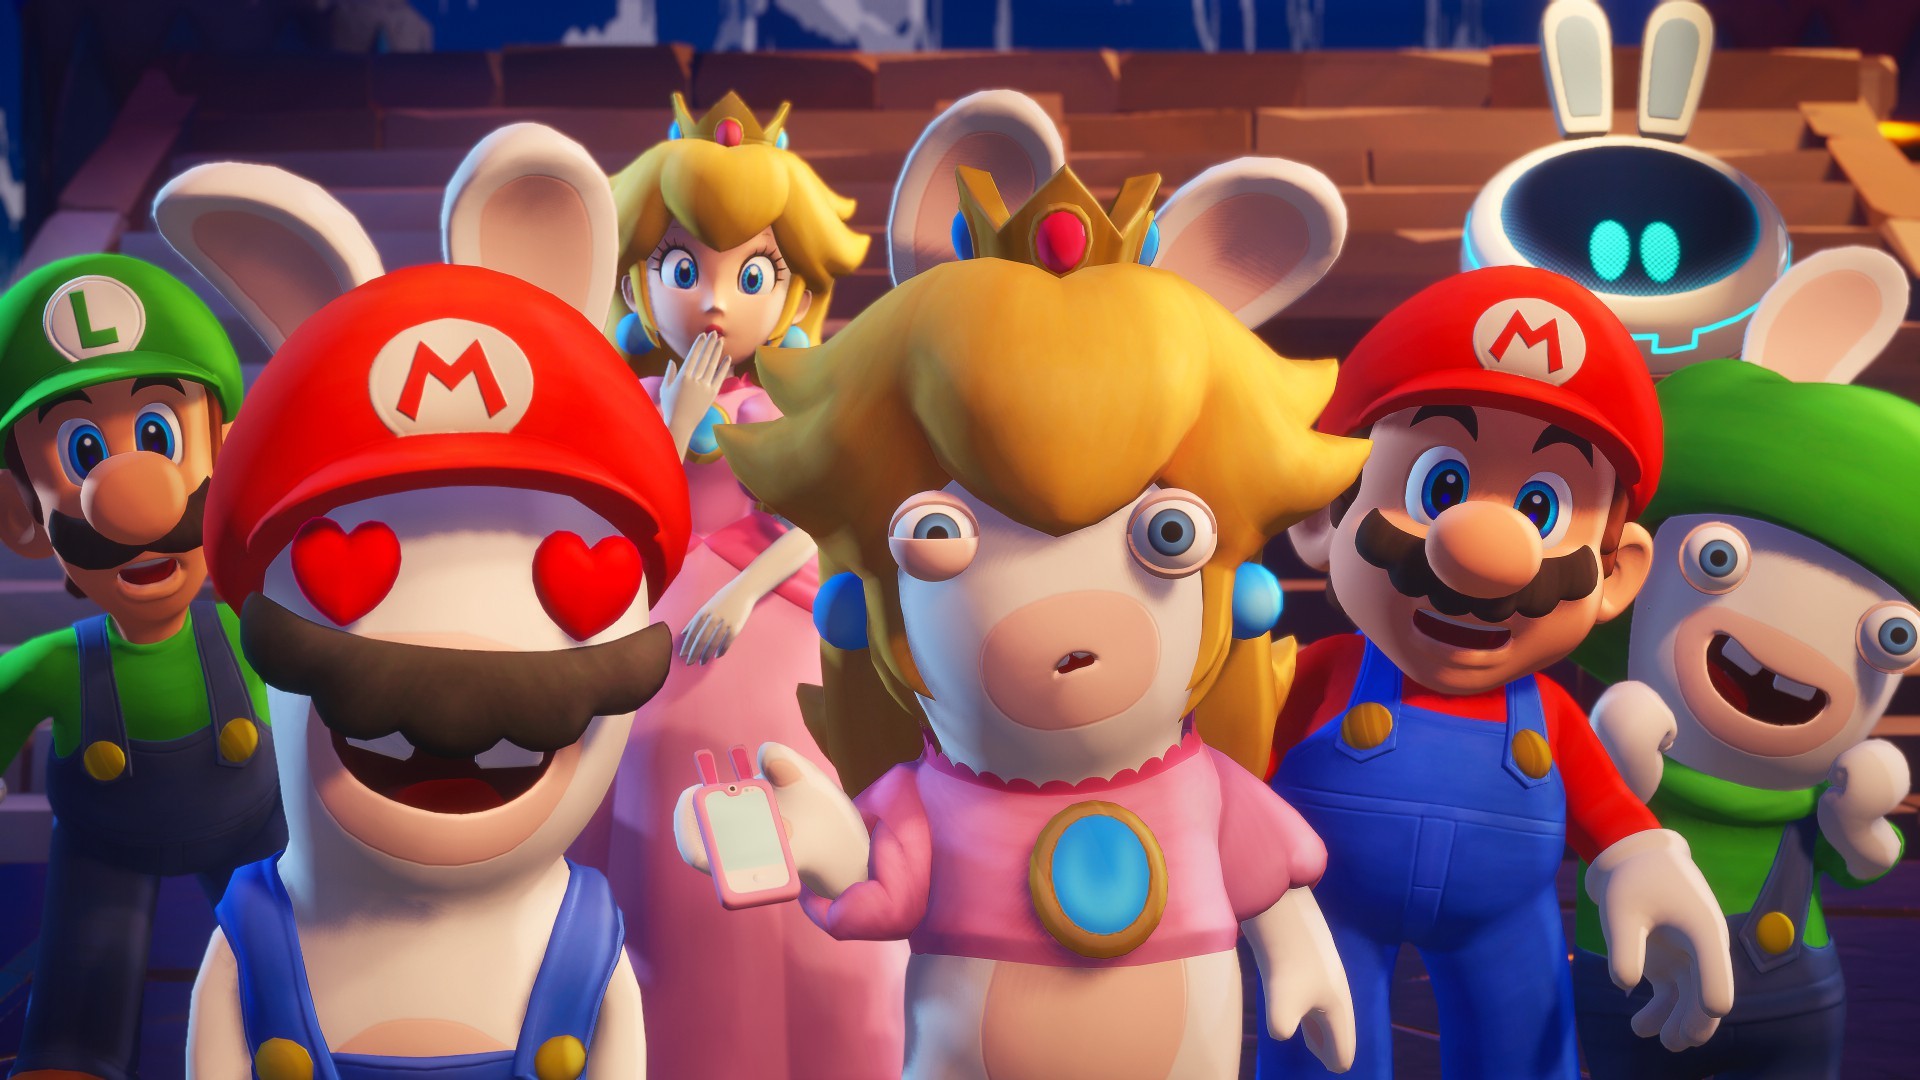 Die Rabbids sind vor allem als chaotische Schwarmintelligenz bekannt, in den Taktik-Titeln mit Mario bekommen sie aber auch individuelle Persönlichkeiten. Quelle: Nintendo / Ubisoft